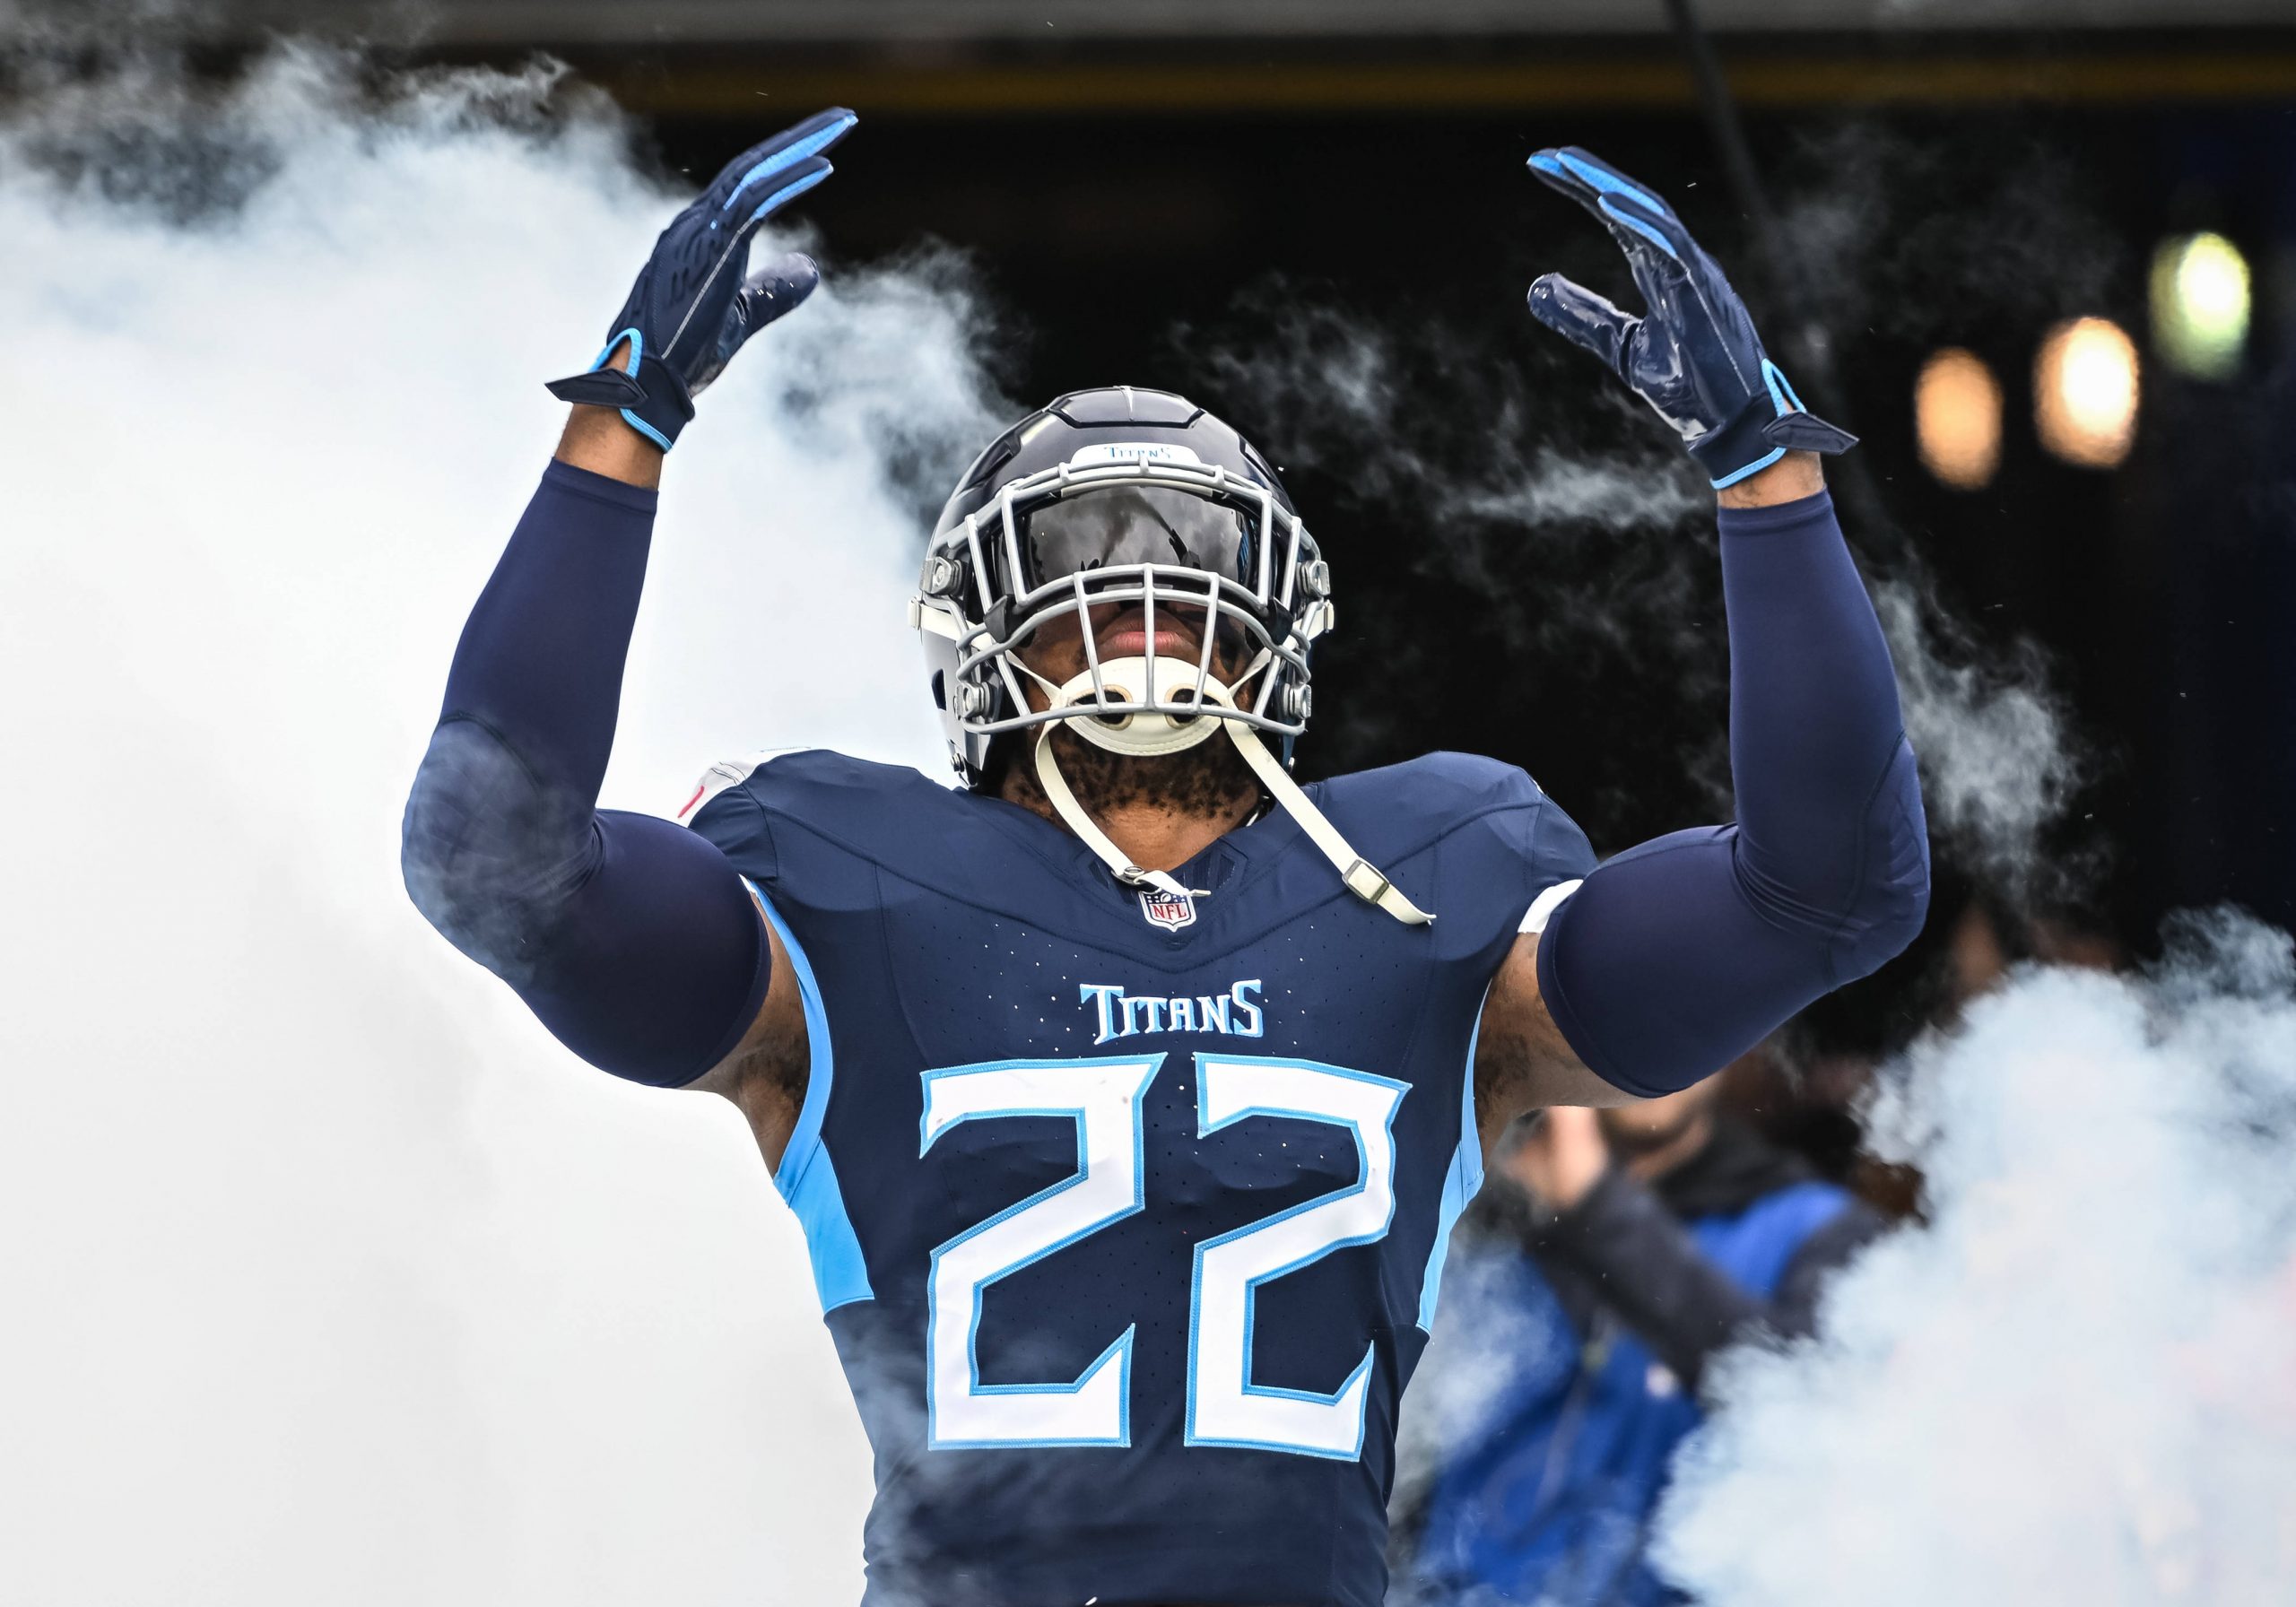 FootballR - NFL - Diese Beschreibung wurde automatisch generiert. Ein Titans-Spieler in einer blauen Uniform, steht vor Rauch. Gibt es die Derrick Henry Rückkehr ins Team?